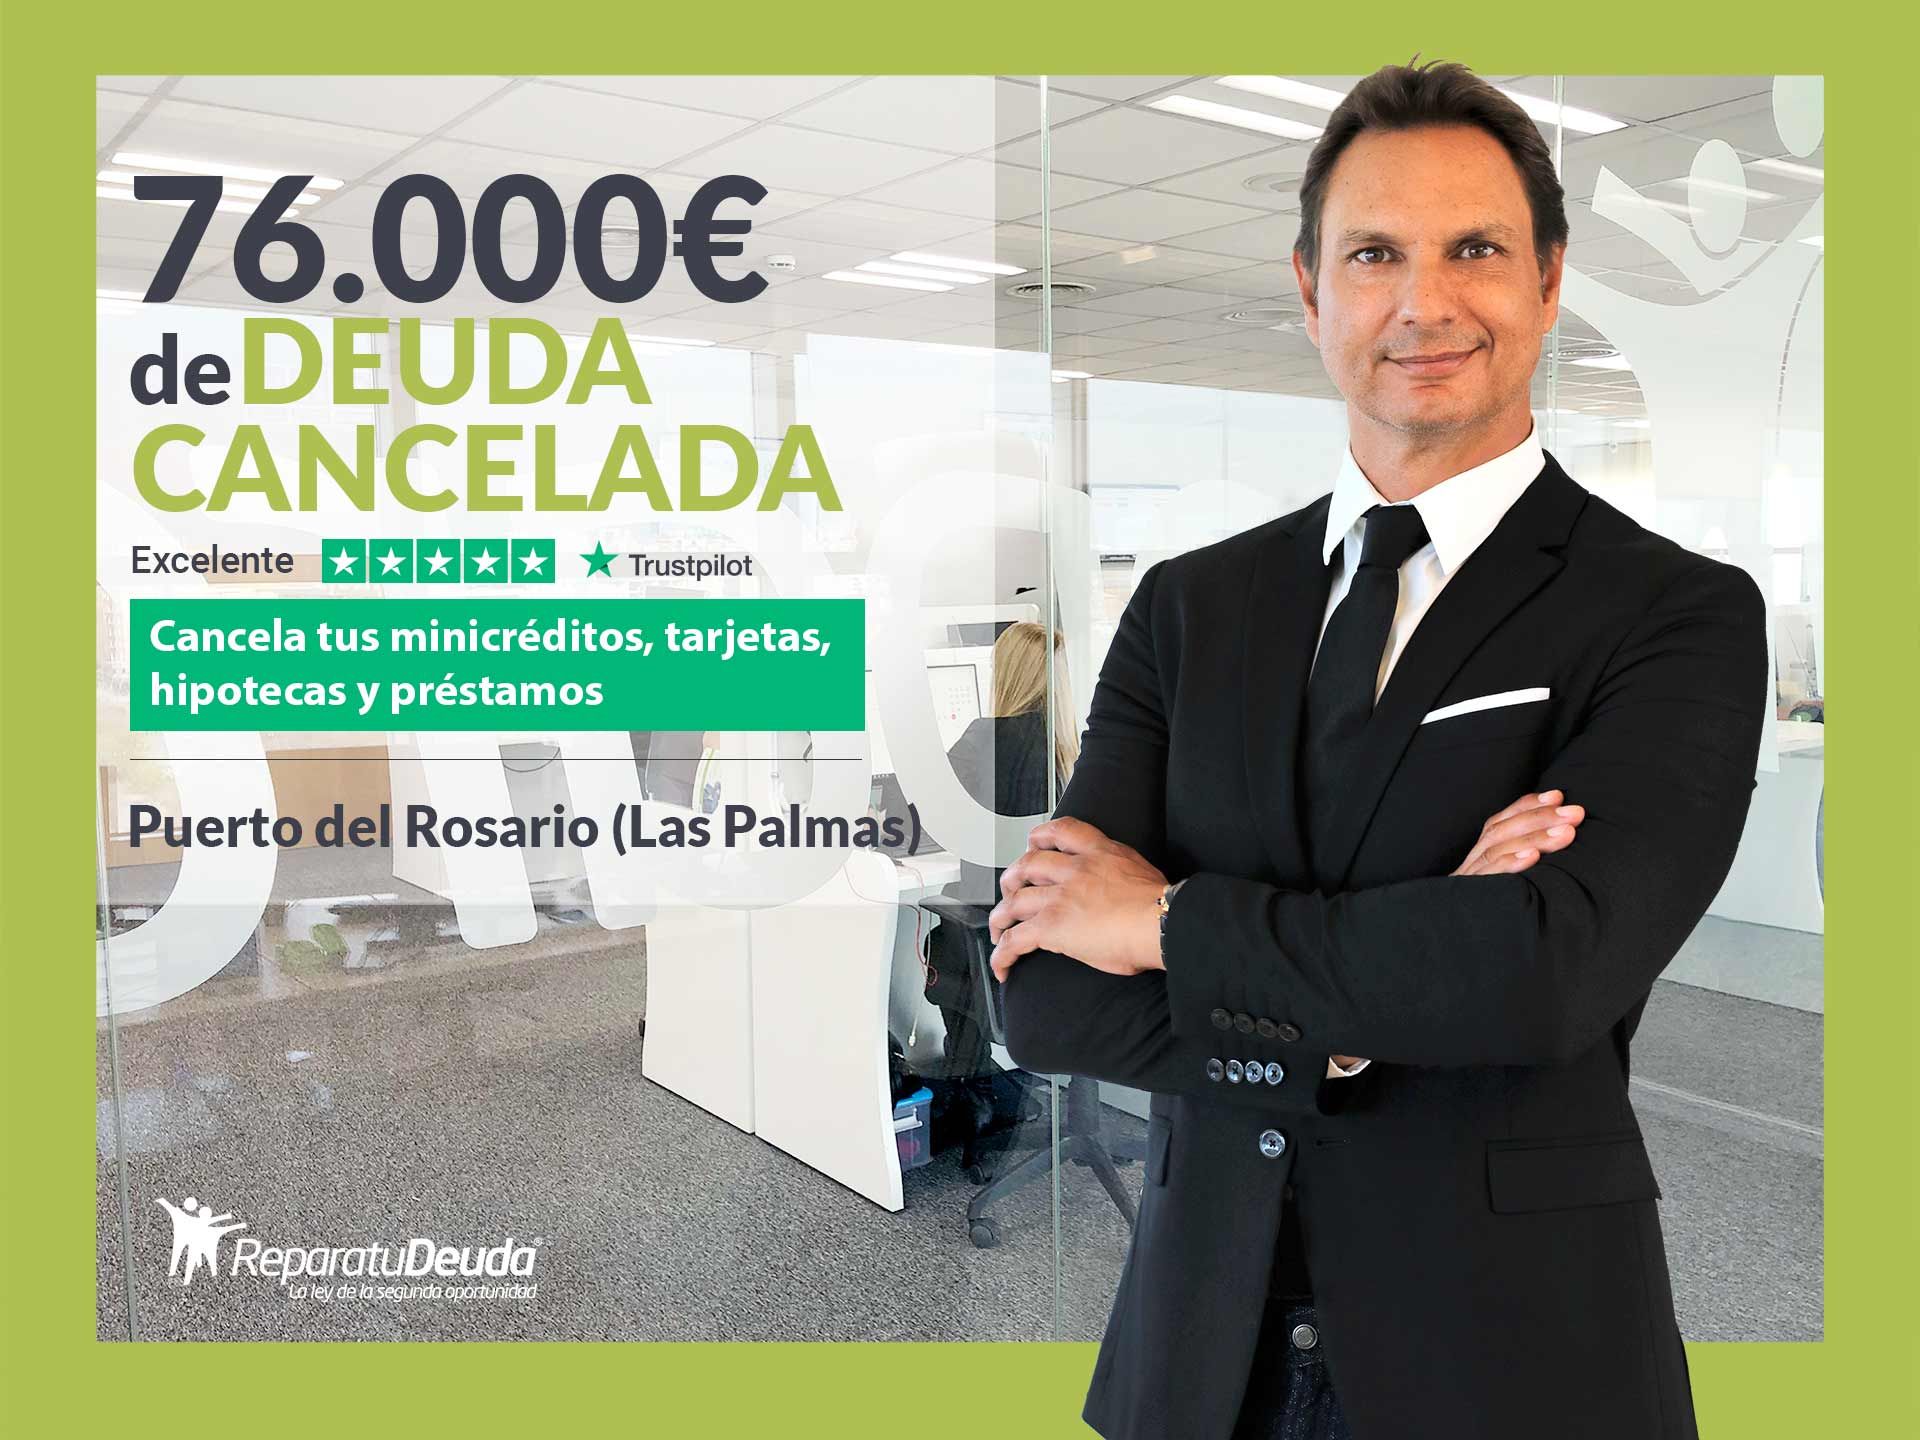 Repara tu Deuda cancela 76.000? en Puerto del Rosario (Las Palmas) con la Ley de Segunda Oportunidad